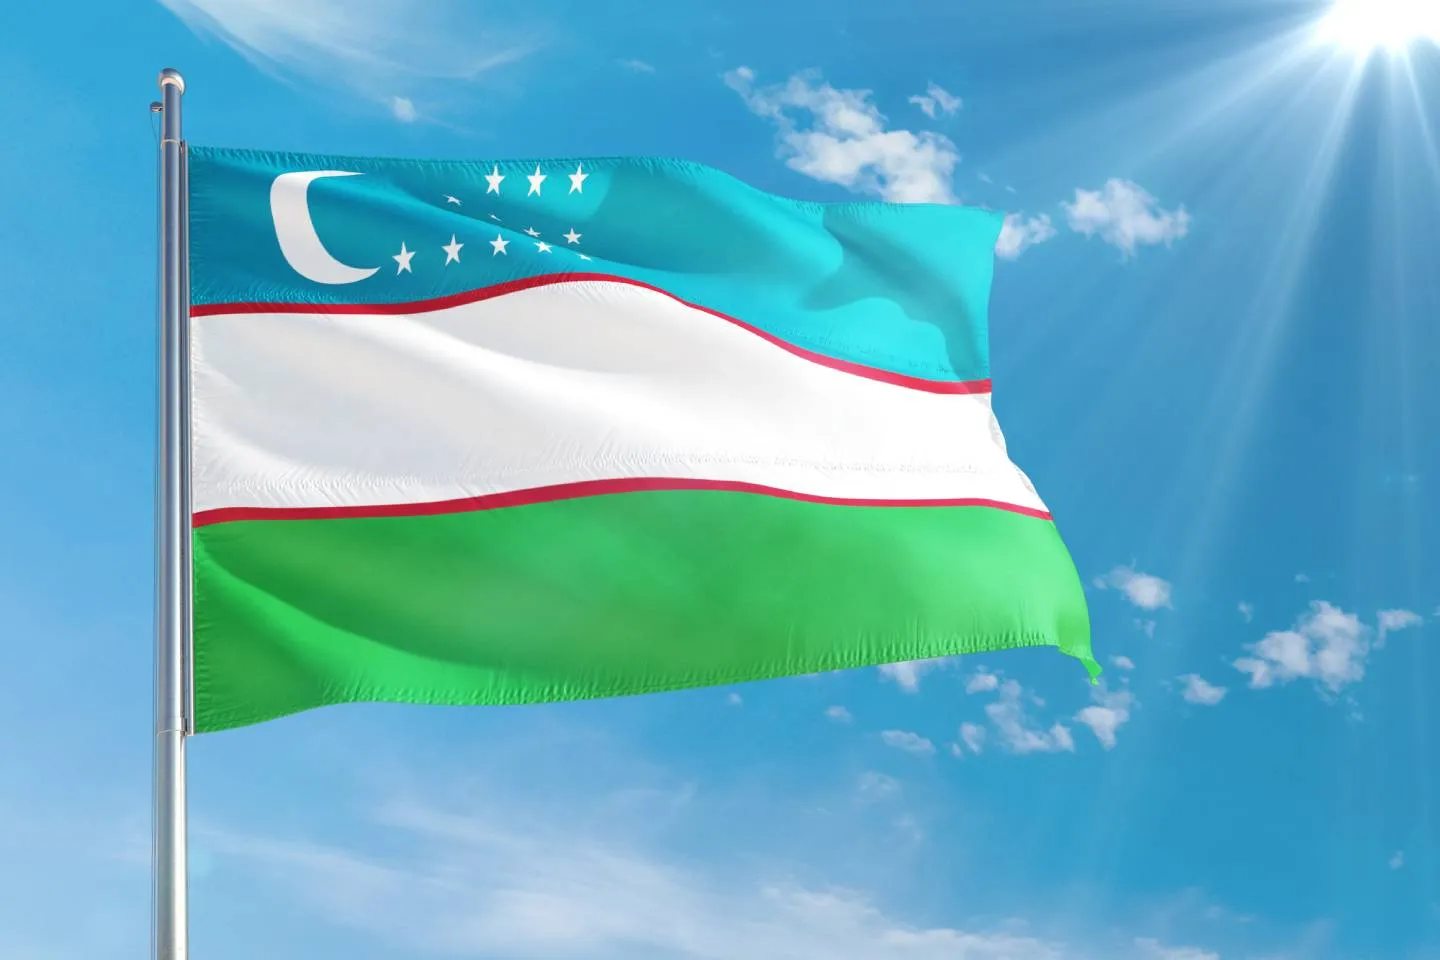 Новости мира / Политика в мире / В Узбекистане состоялся референдум по обновленной Конституции